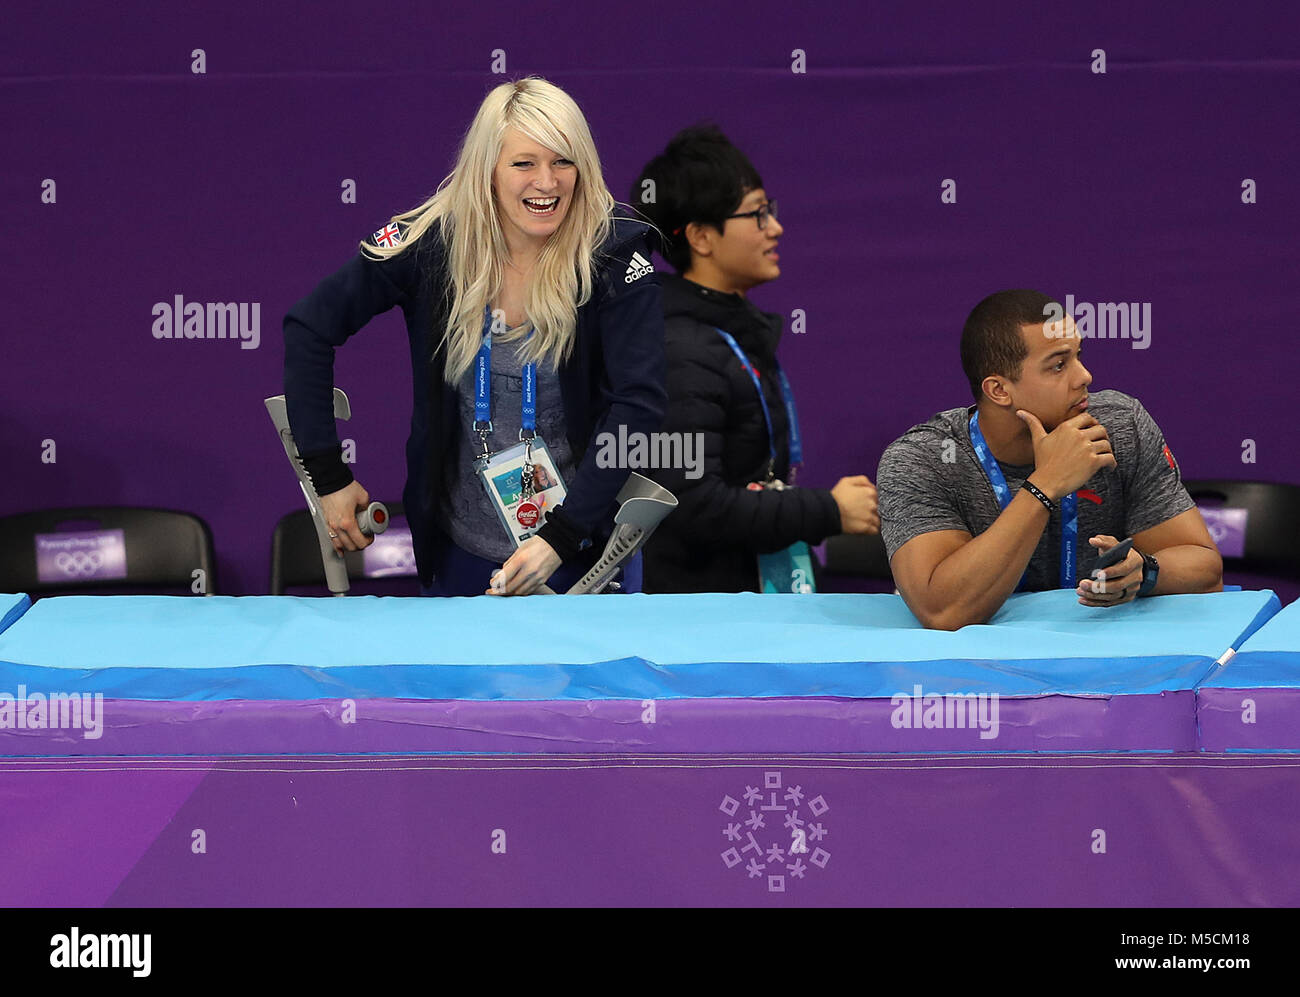 Großbritanniens Elise Christie in Krücken Uhren die Men's Short Track Speed Skating 5.000 m Staffel finale an der Gangneung Ice Arena am Tag 13 der Winter-olympischen Spiele 2018 PyeongChang in Südkorea. Stockfoto